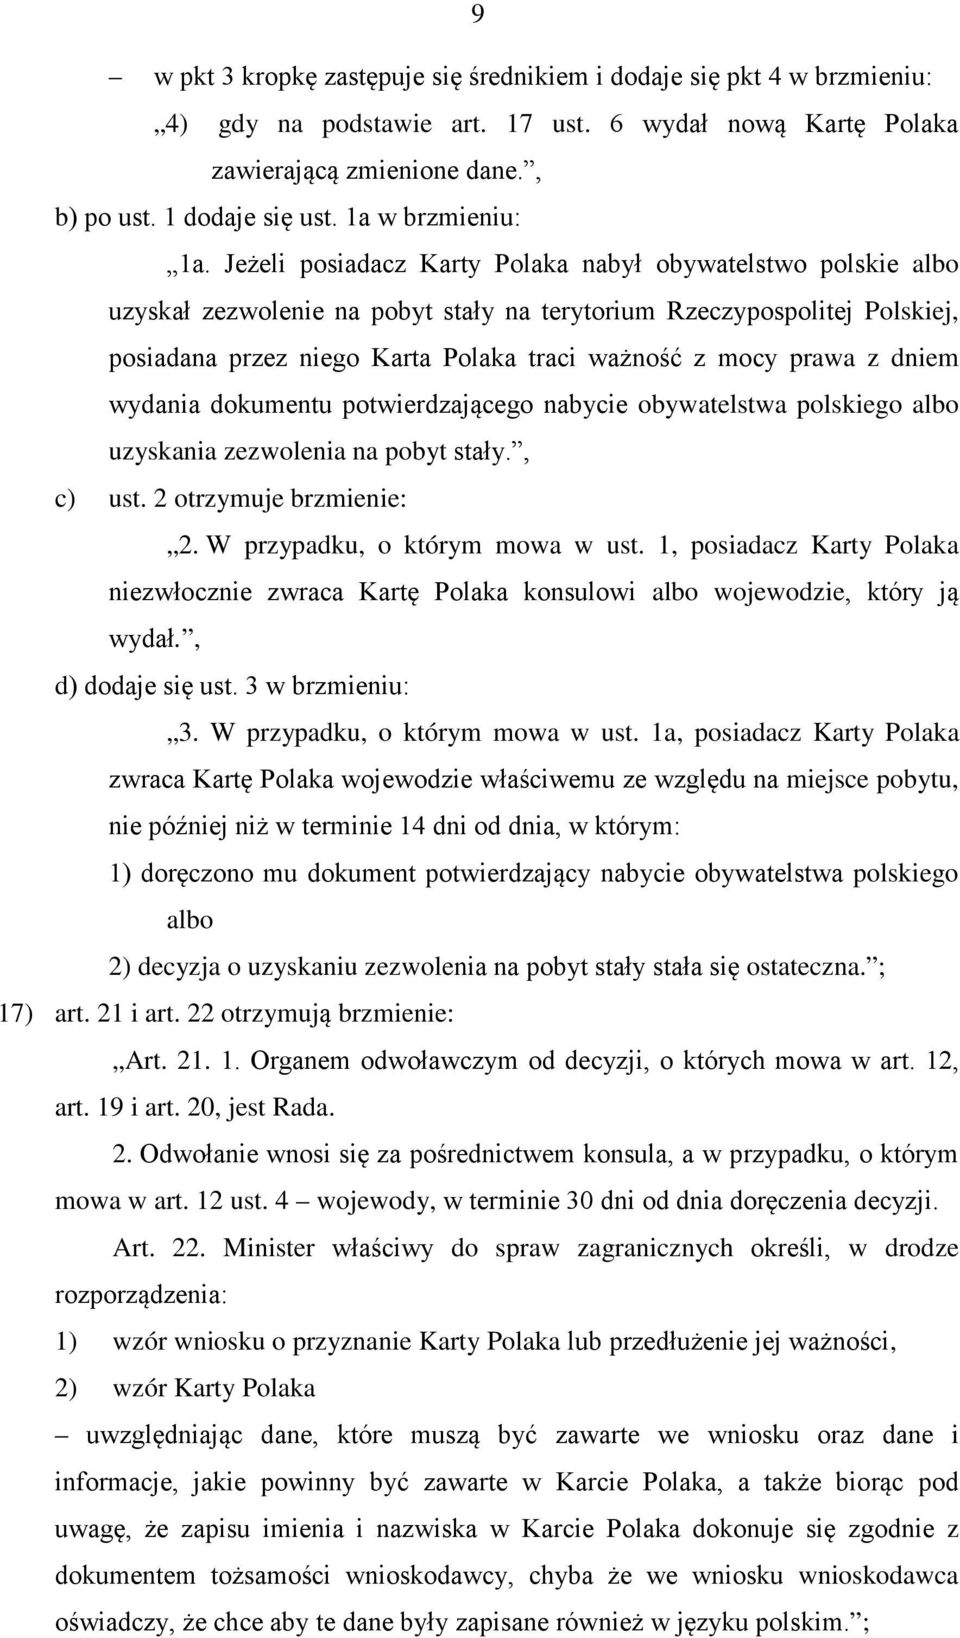 Jeżeli posiadacz Karty Polaka nabył obywatelstwo polskie albo uzyskał zezwolenie na pobyt stały na terytorium Rzeczypospolitej Polskiej, posiadana przez niego Karta Polaka traci ważność z mocy prawa